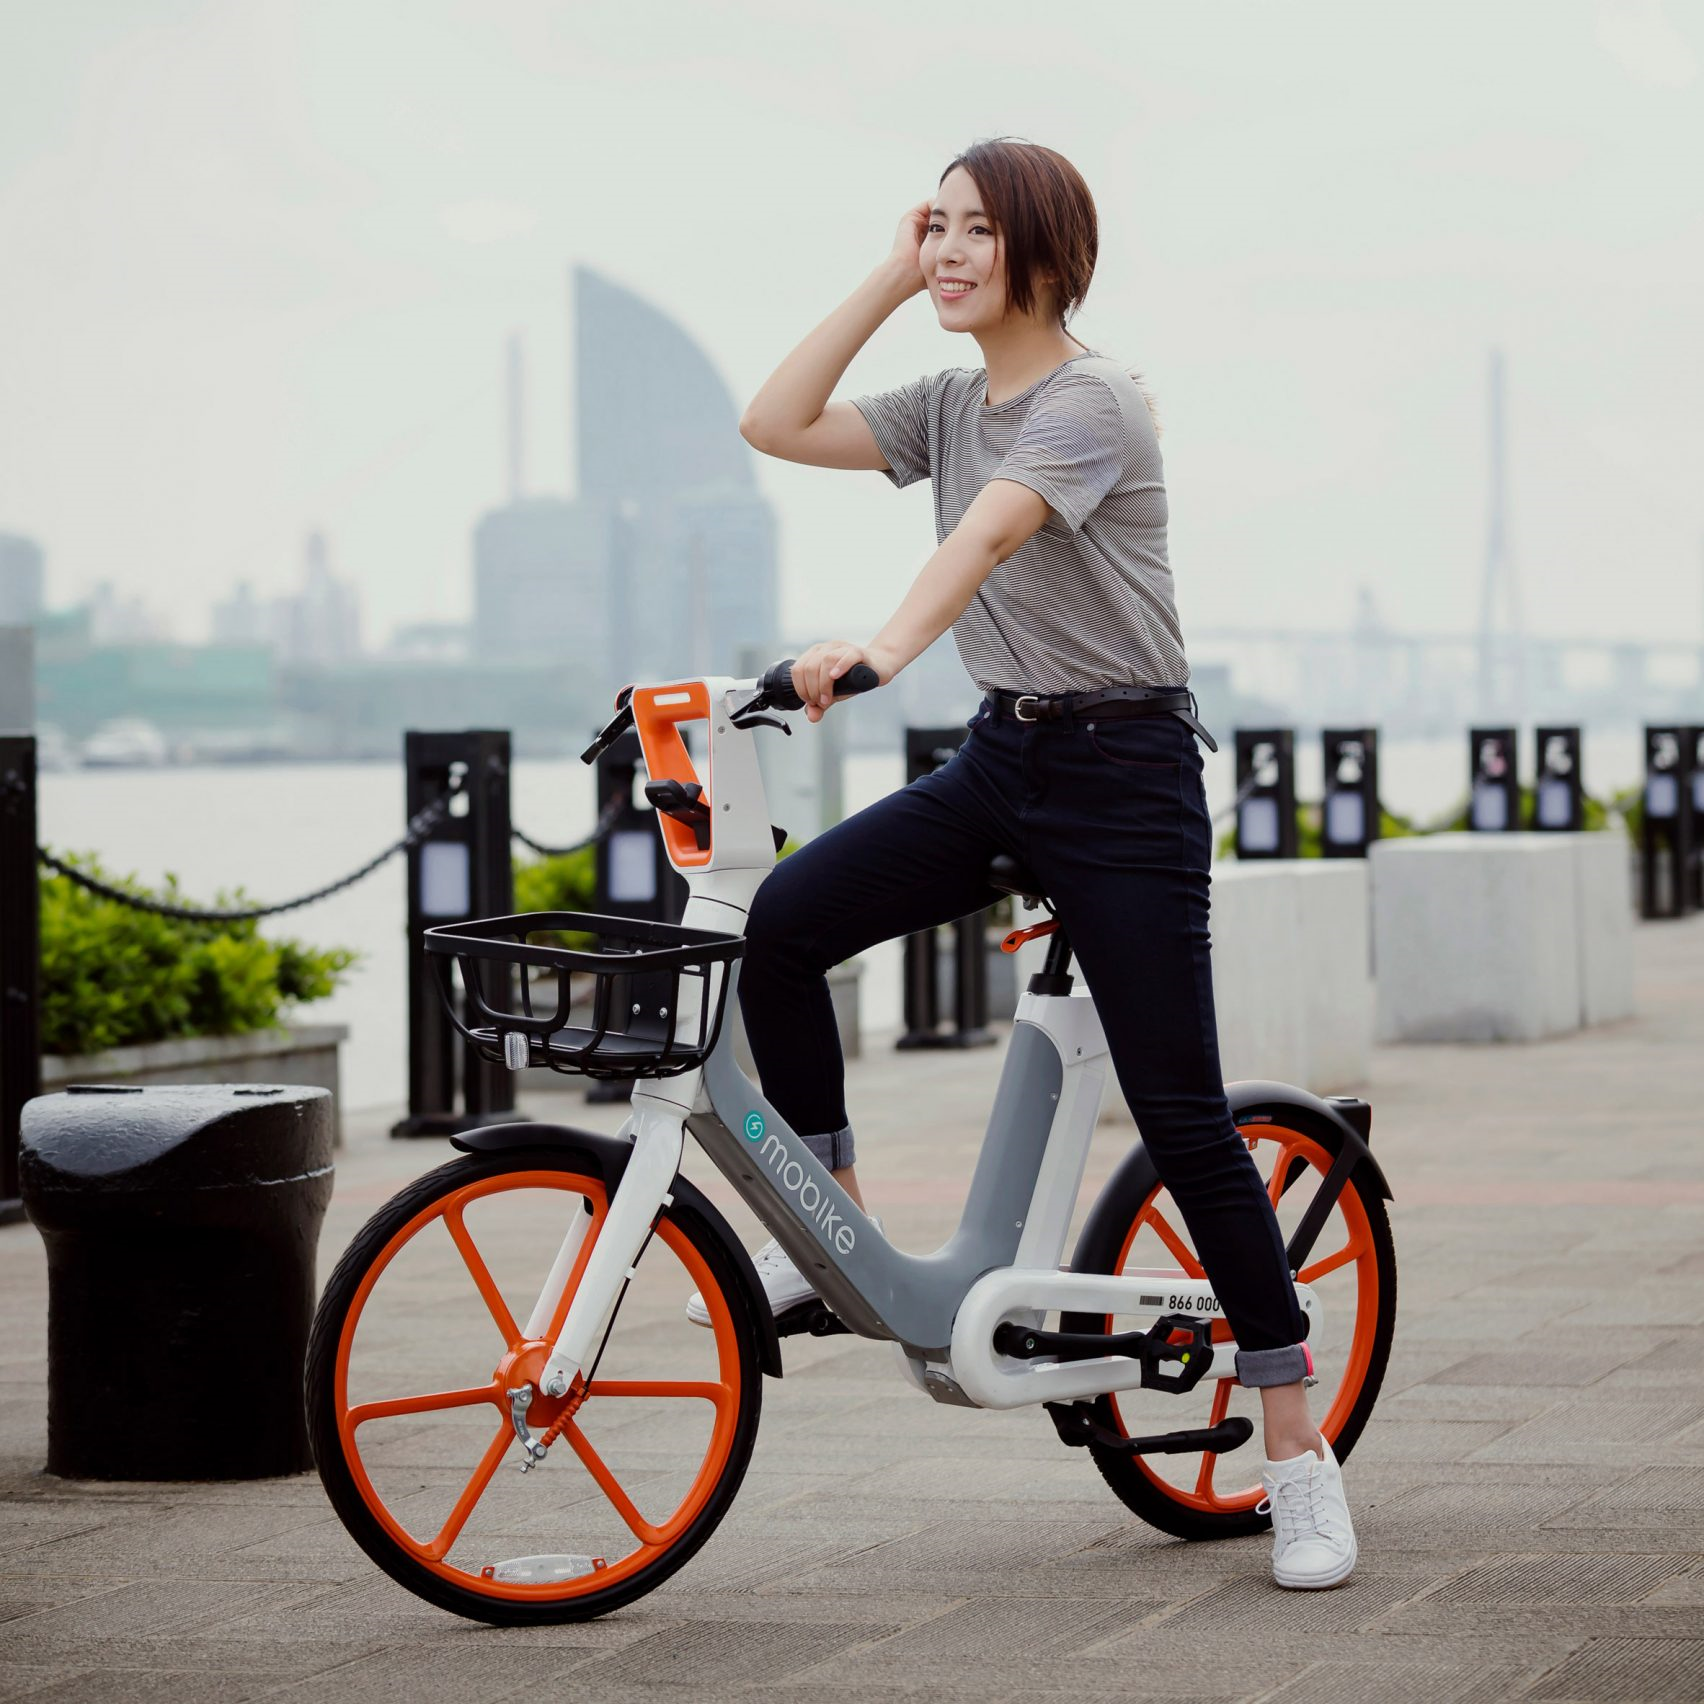 모바이크 전기자전거로 거치대없는 자전거공유 가능